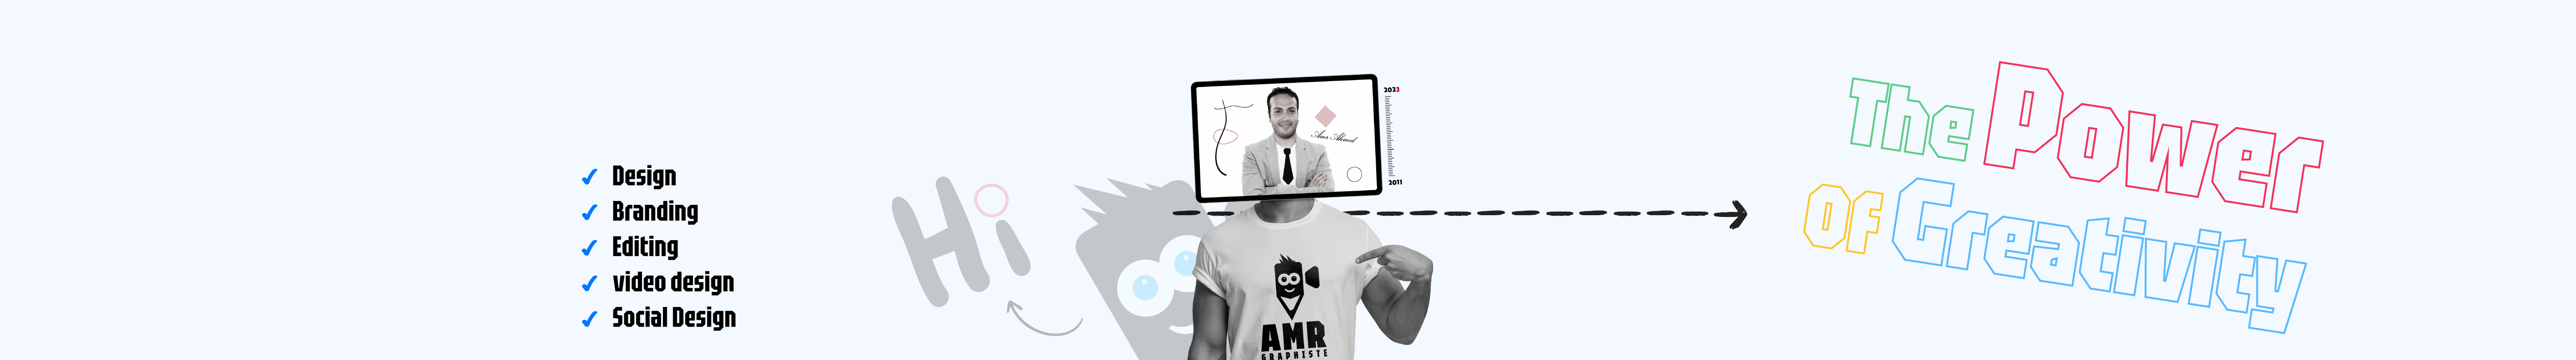 Баннер профиля Amr Graphiste